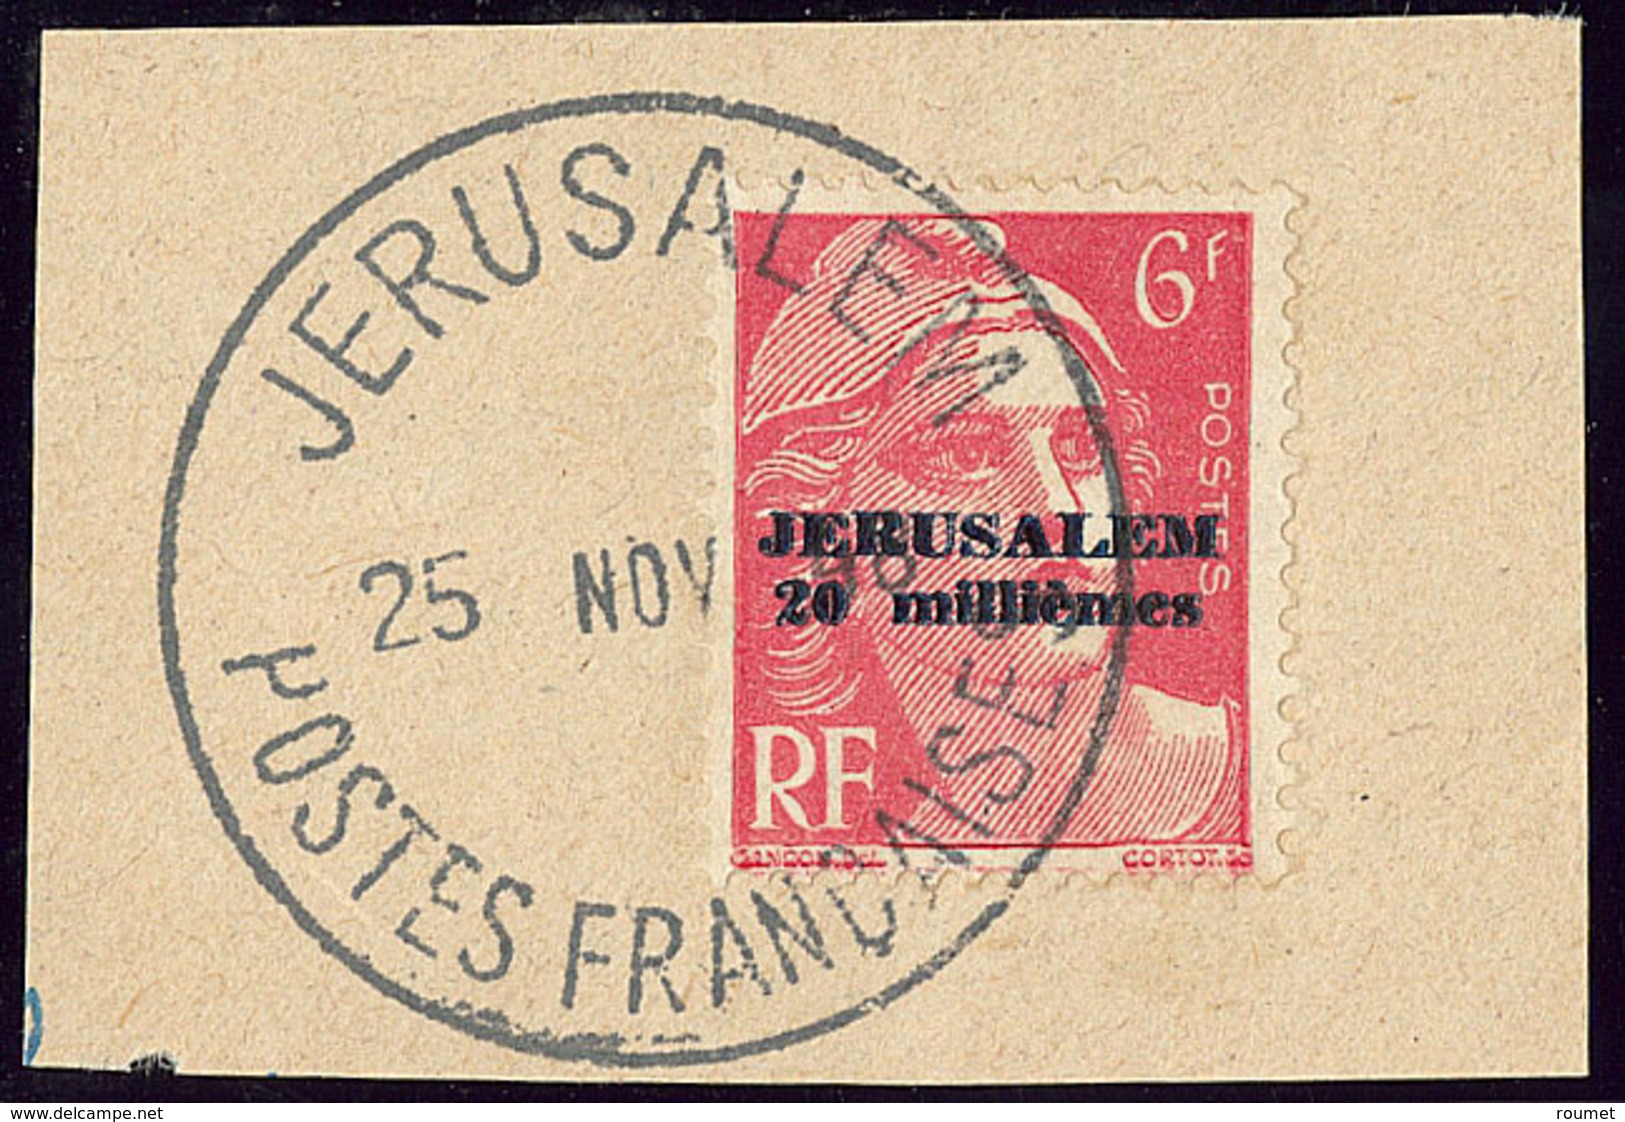 No 3, Obl Grand Cad 25 Nov 48 Sur Petit Fragment. - TB - War Stamps